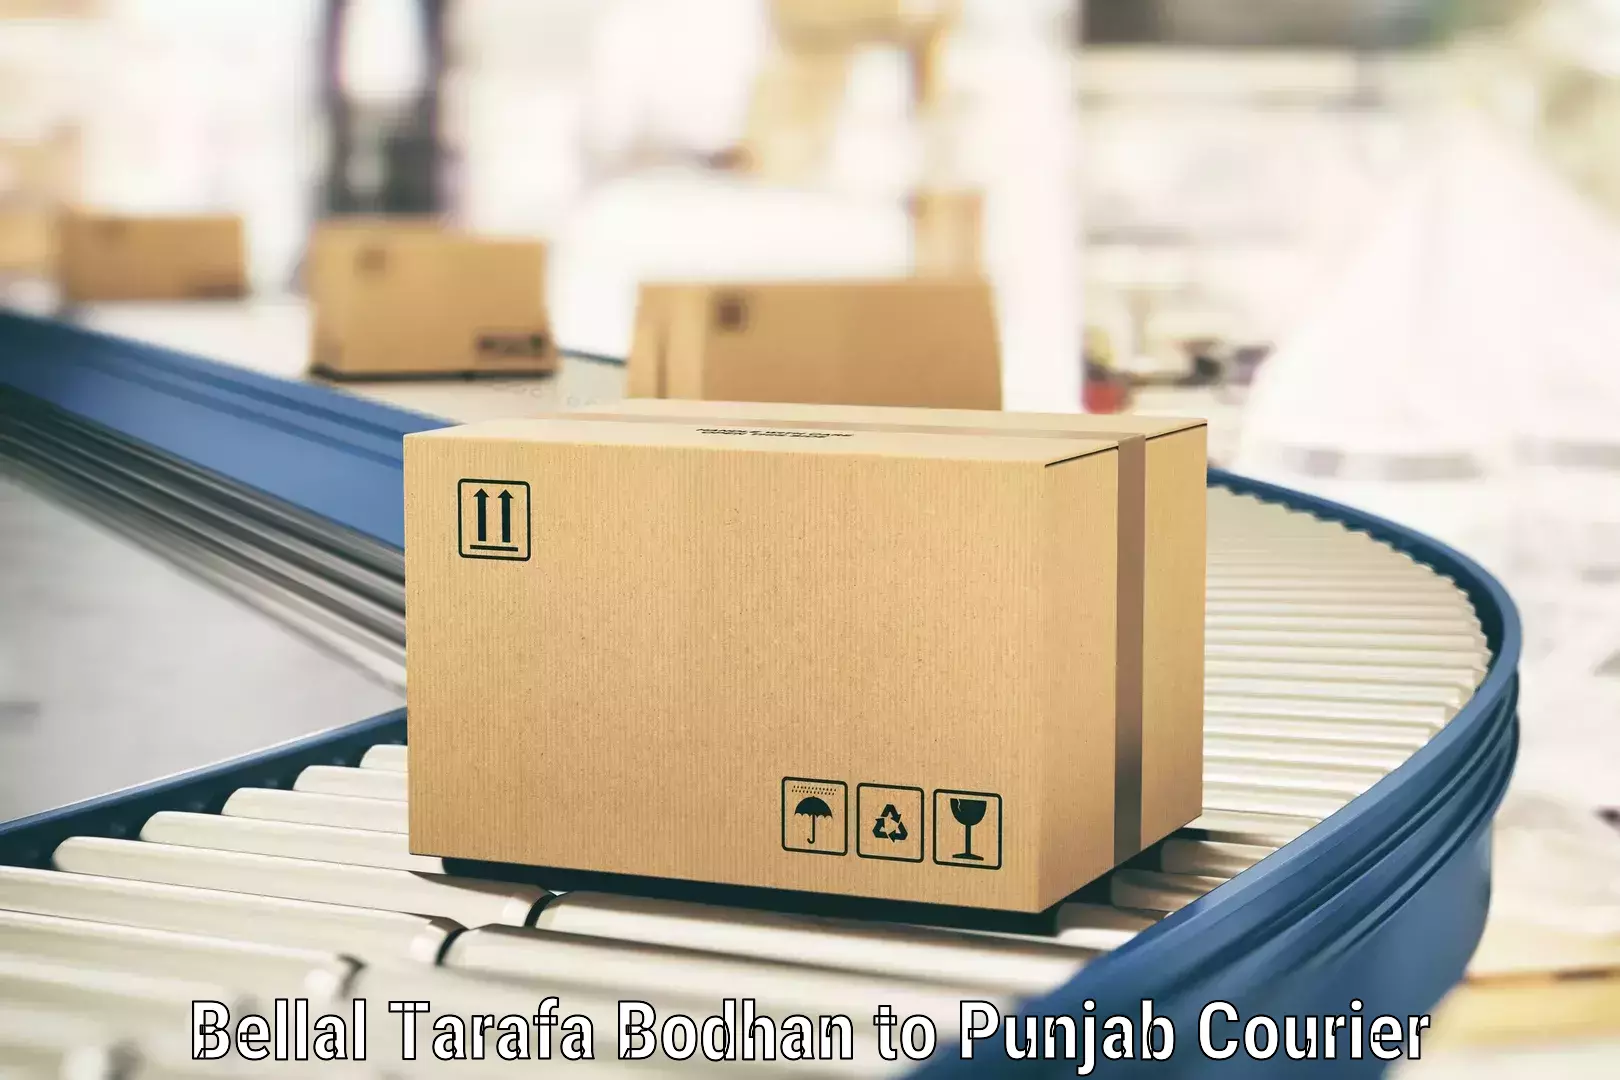 Expedited shipping methods in Bellal Tarafa Bodhan to Abohar